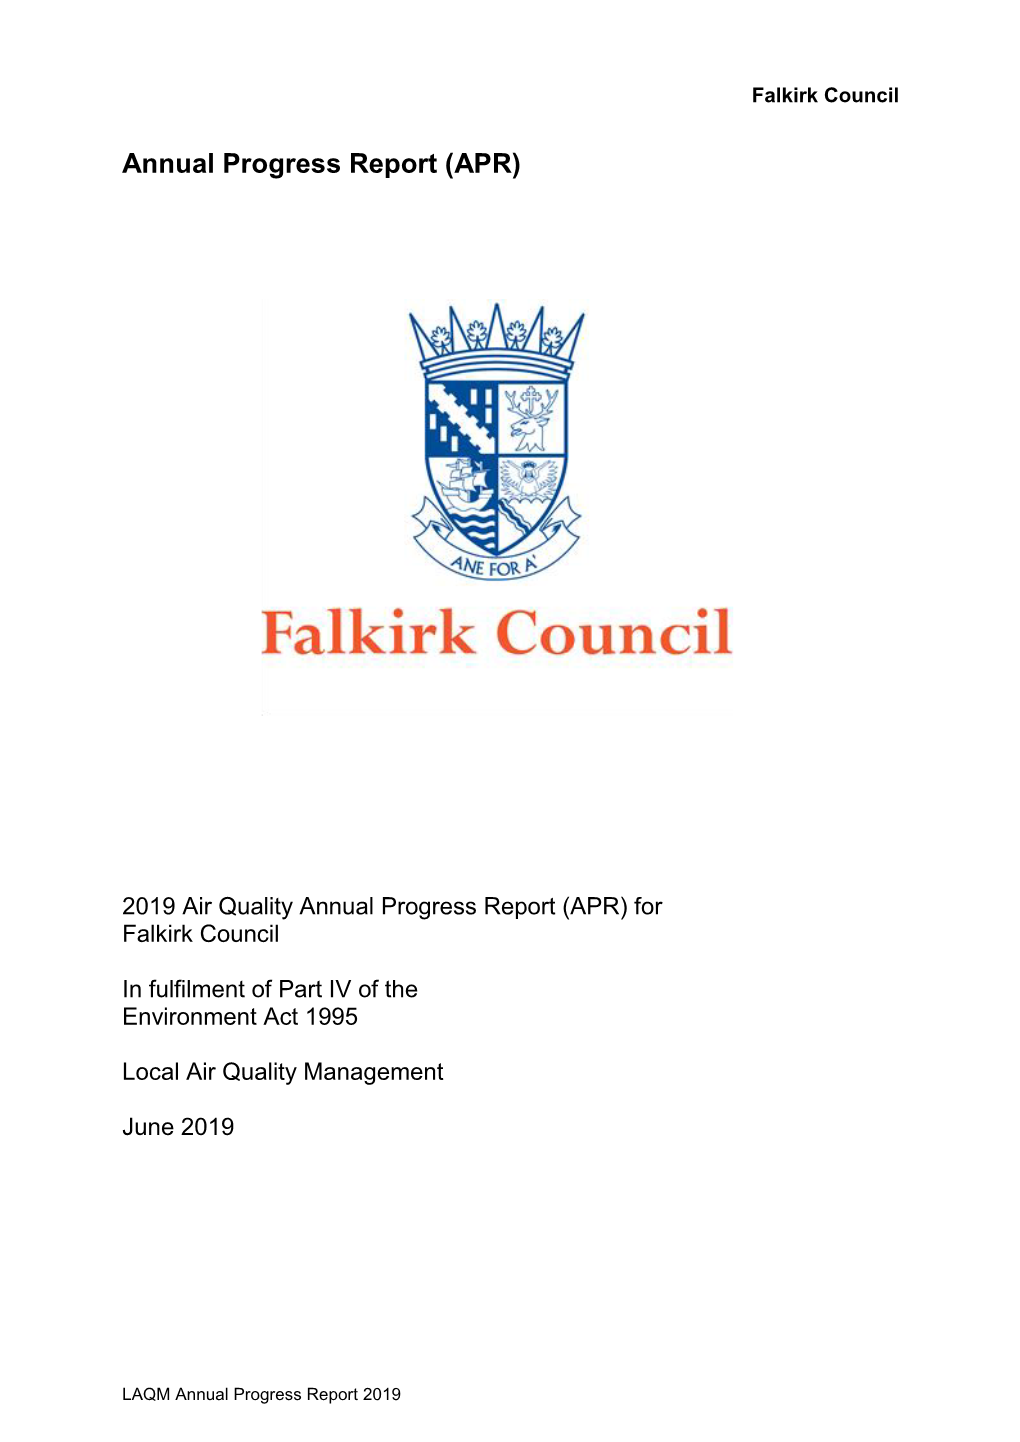 Progress Report 2019 Falkirk Council